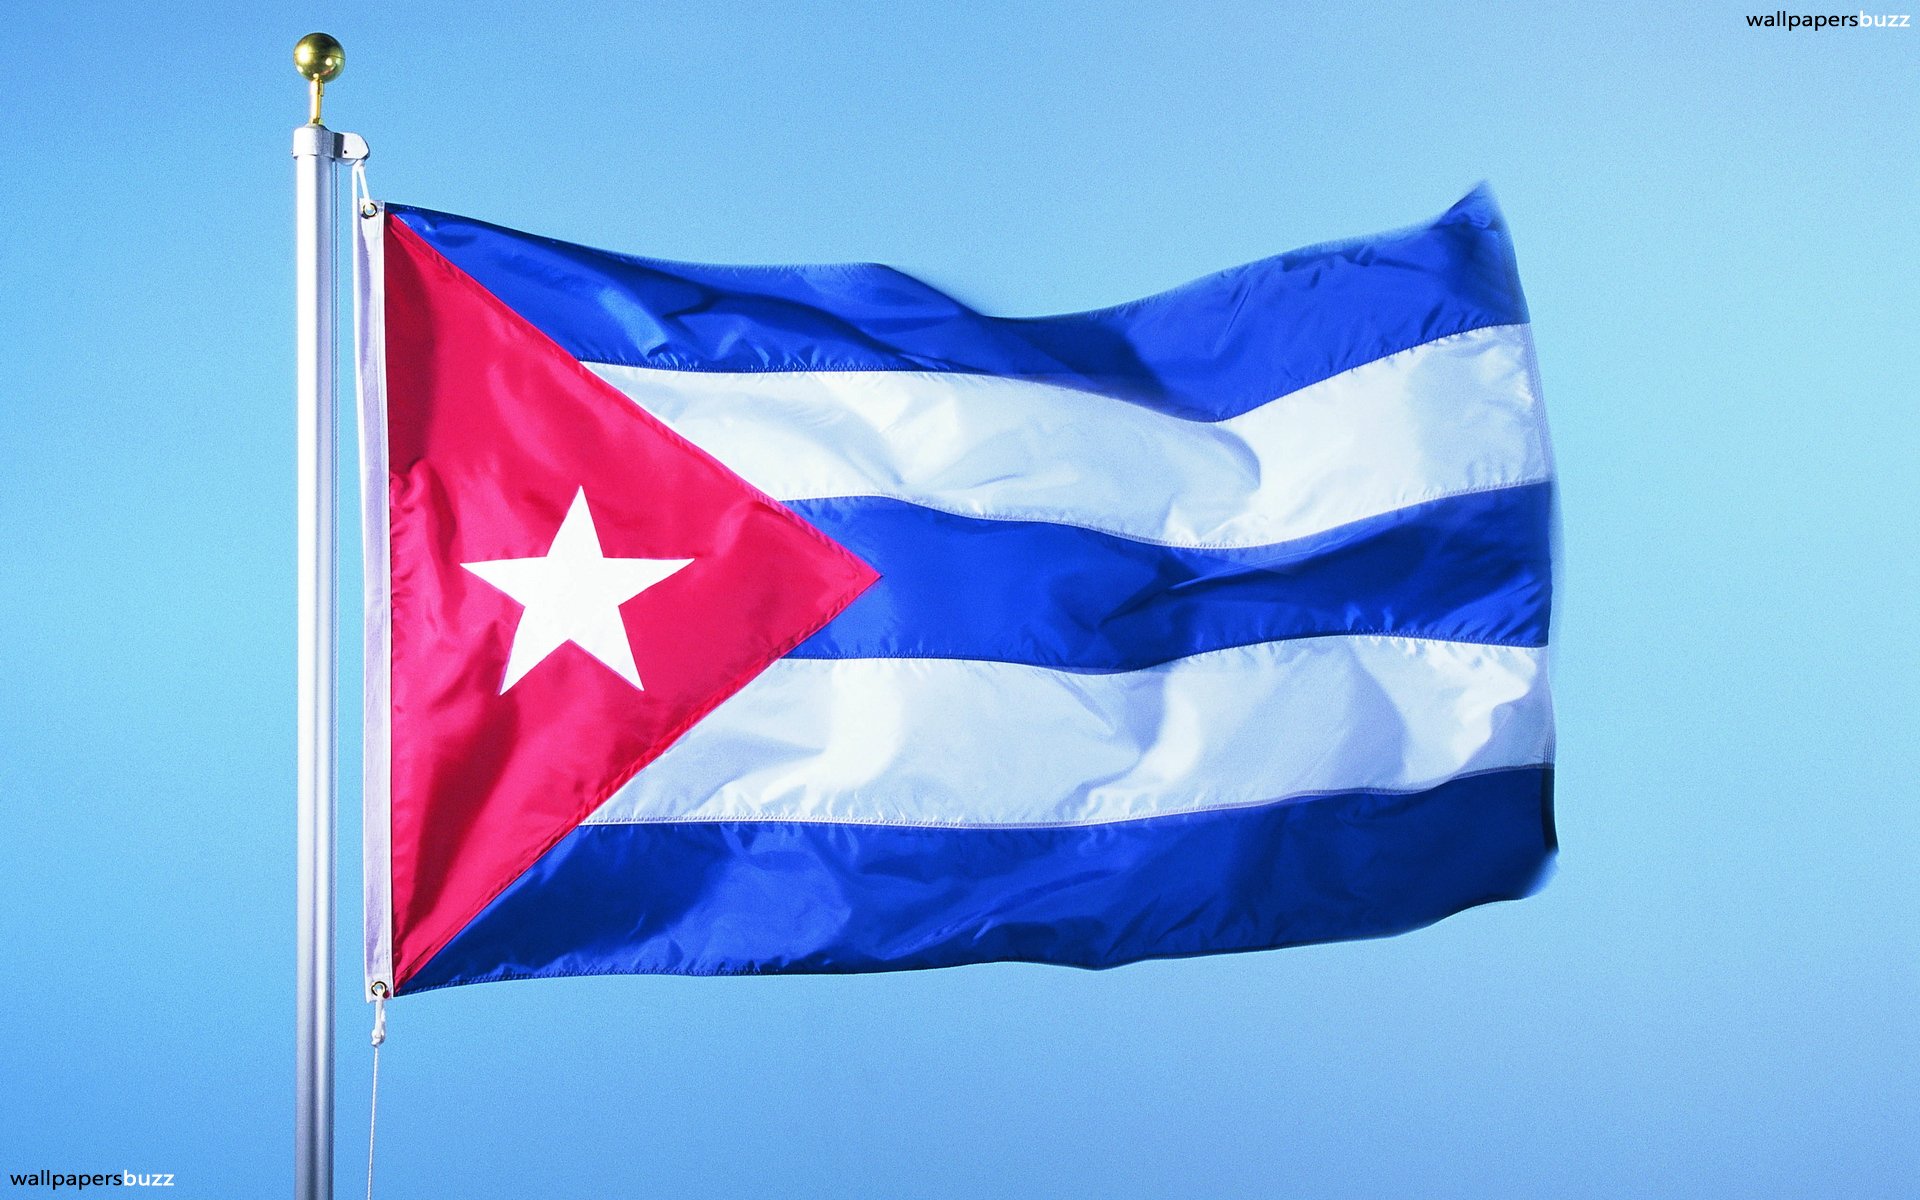 Government Of Cuba Flag - HD Wallpaper 